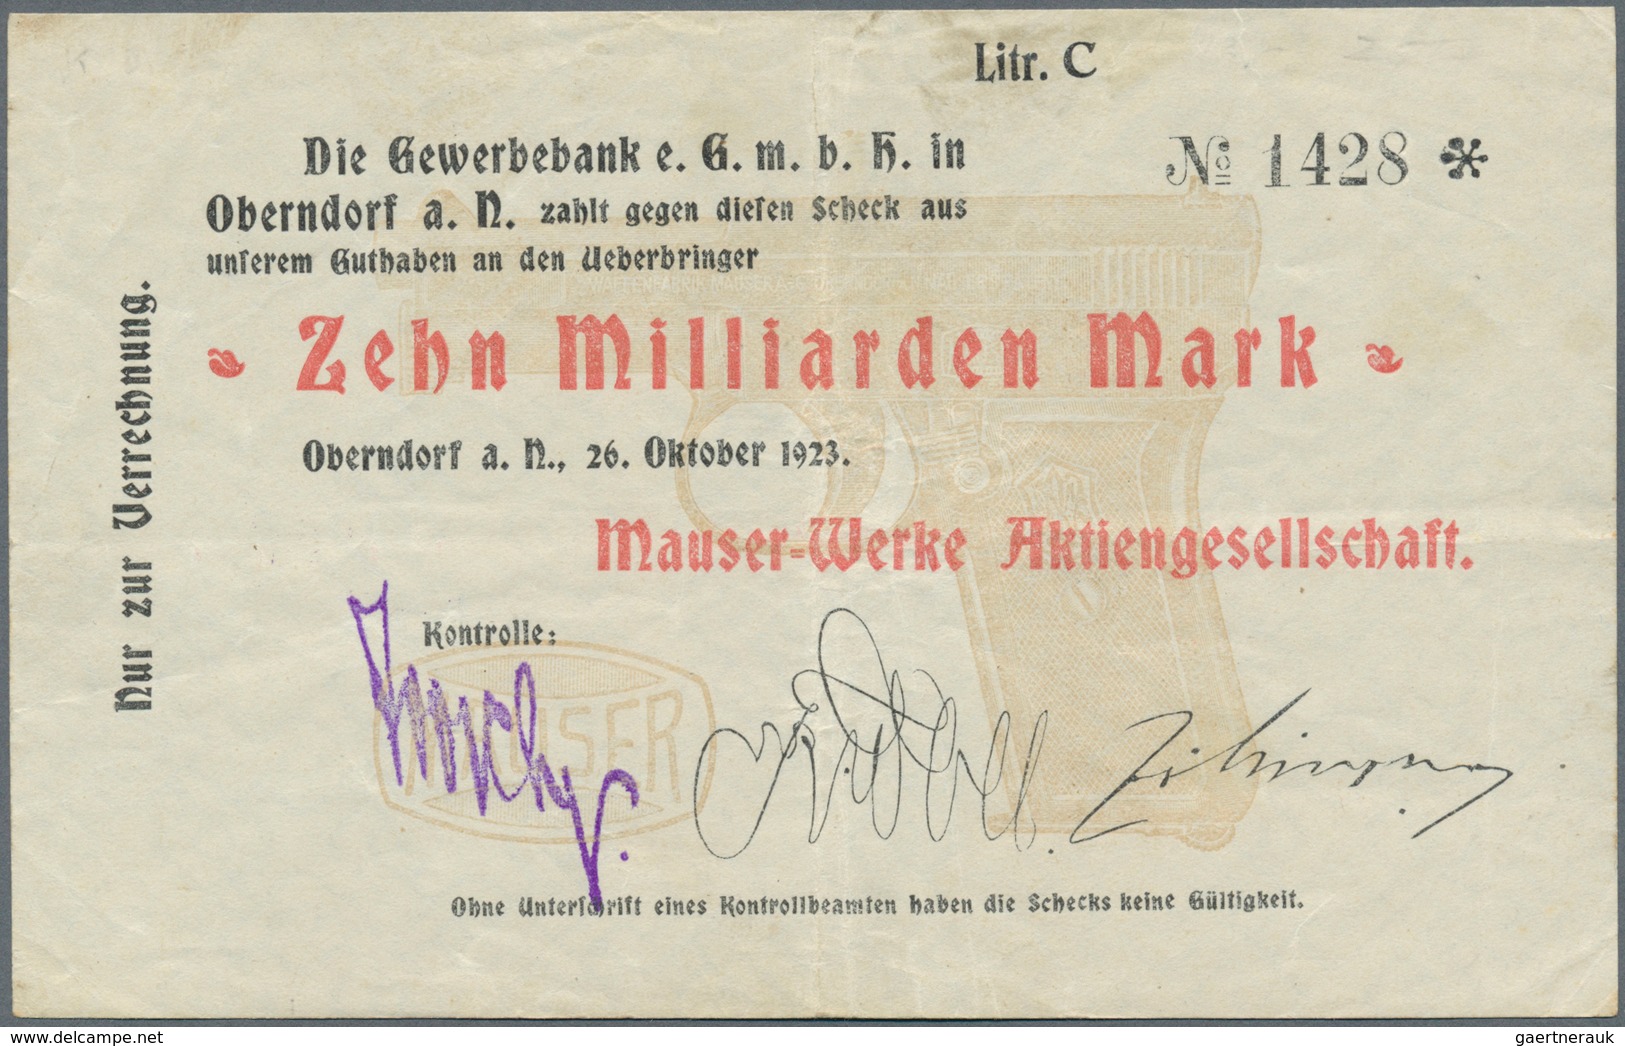 Deutschland - Notgeld - Württemberg: Oberndorf, Mauser-Werke AG, 100 Tsd. Mark, 10.8.1923, 1 Mio. Ma - [11] Emisiones Locales